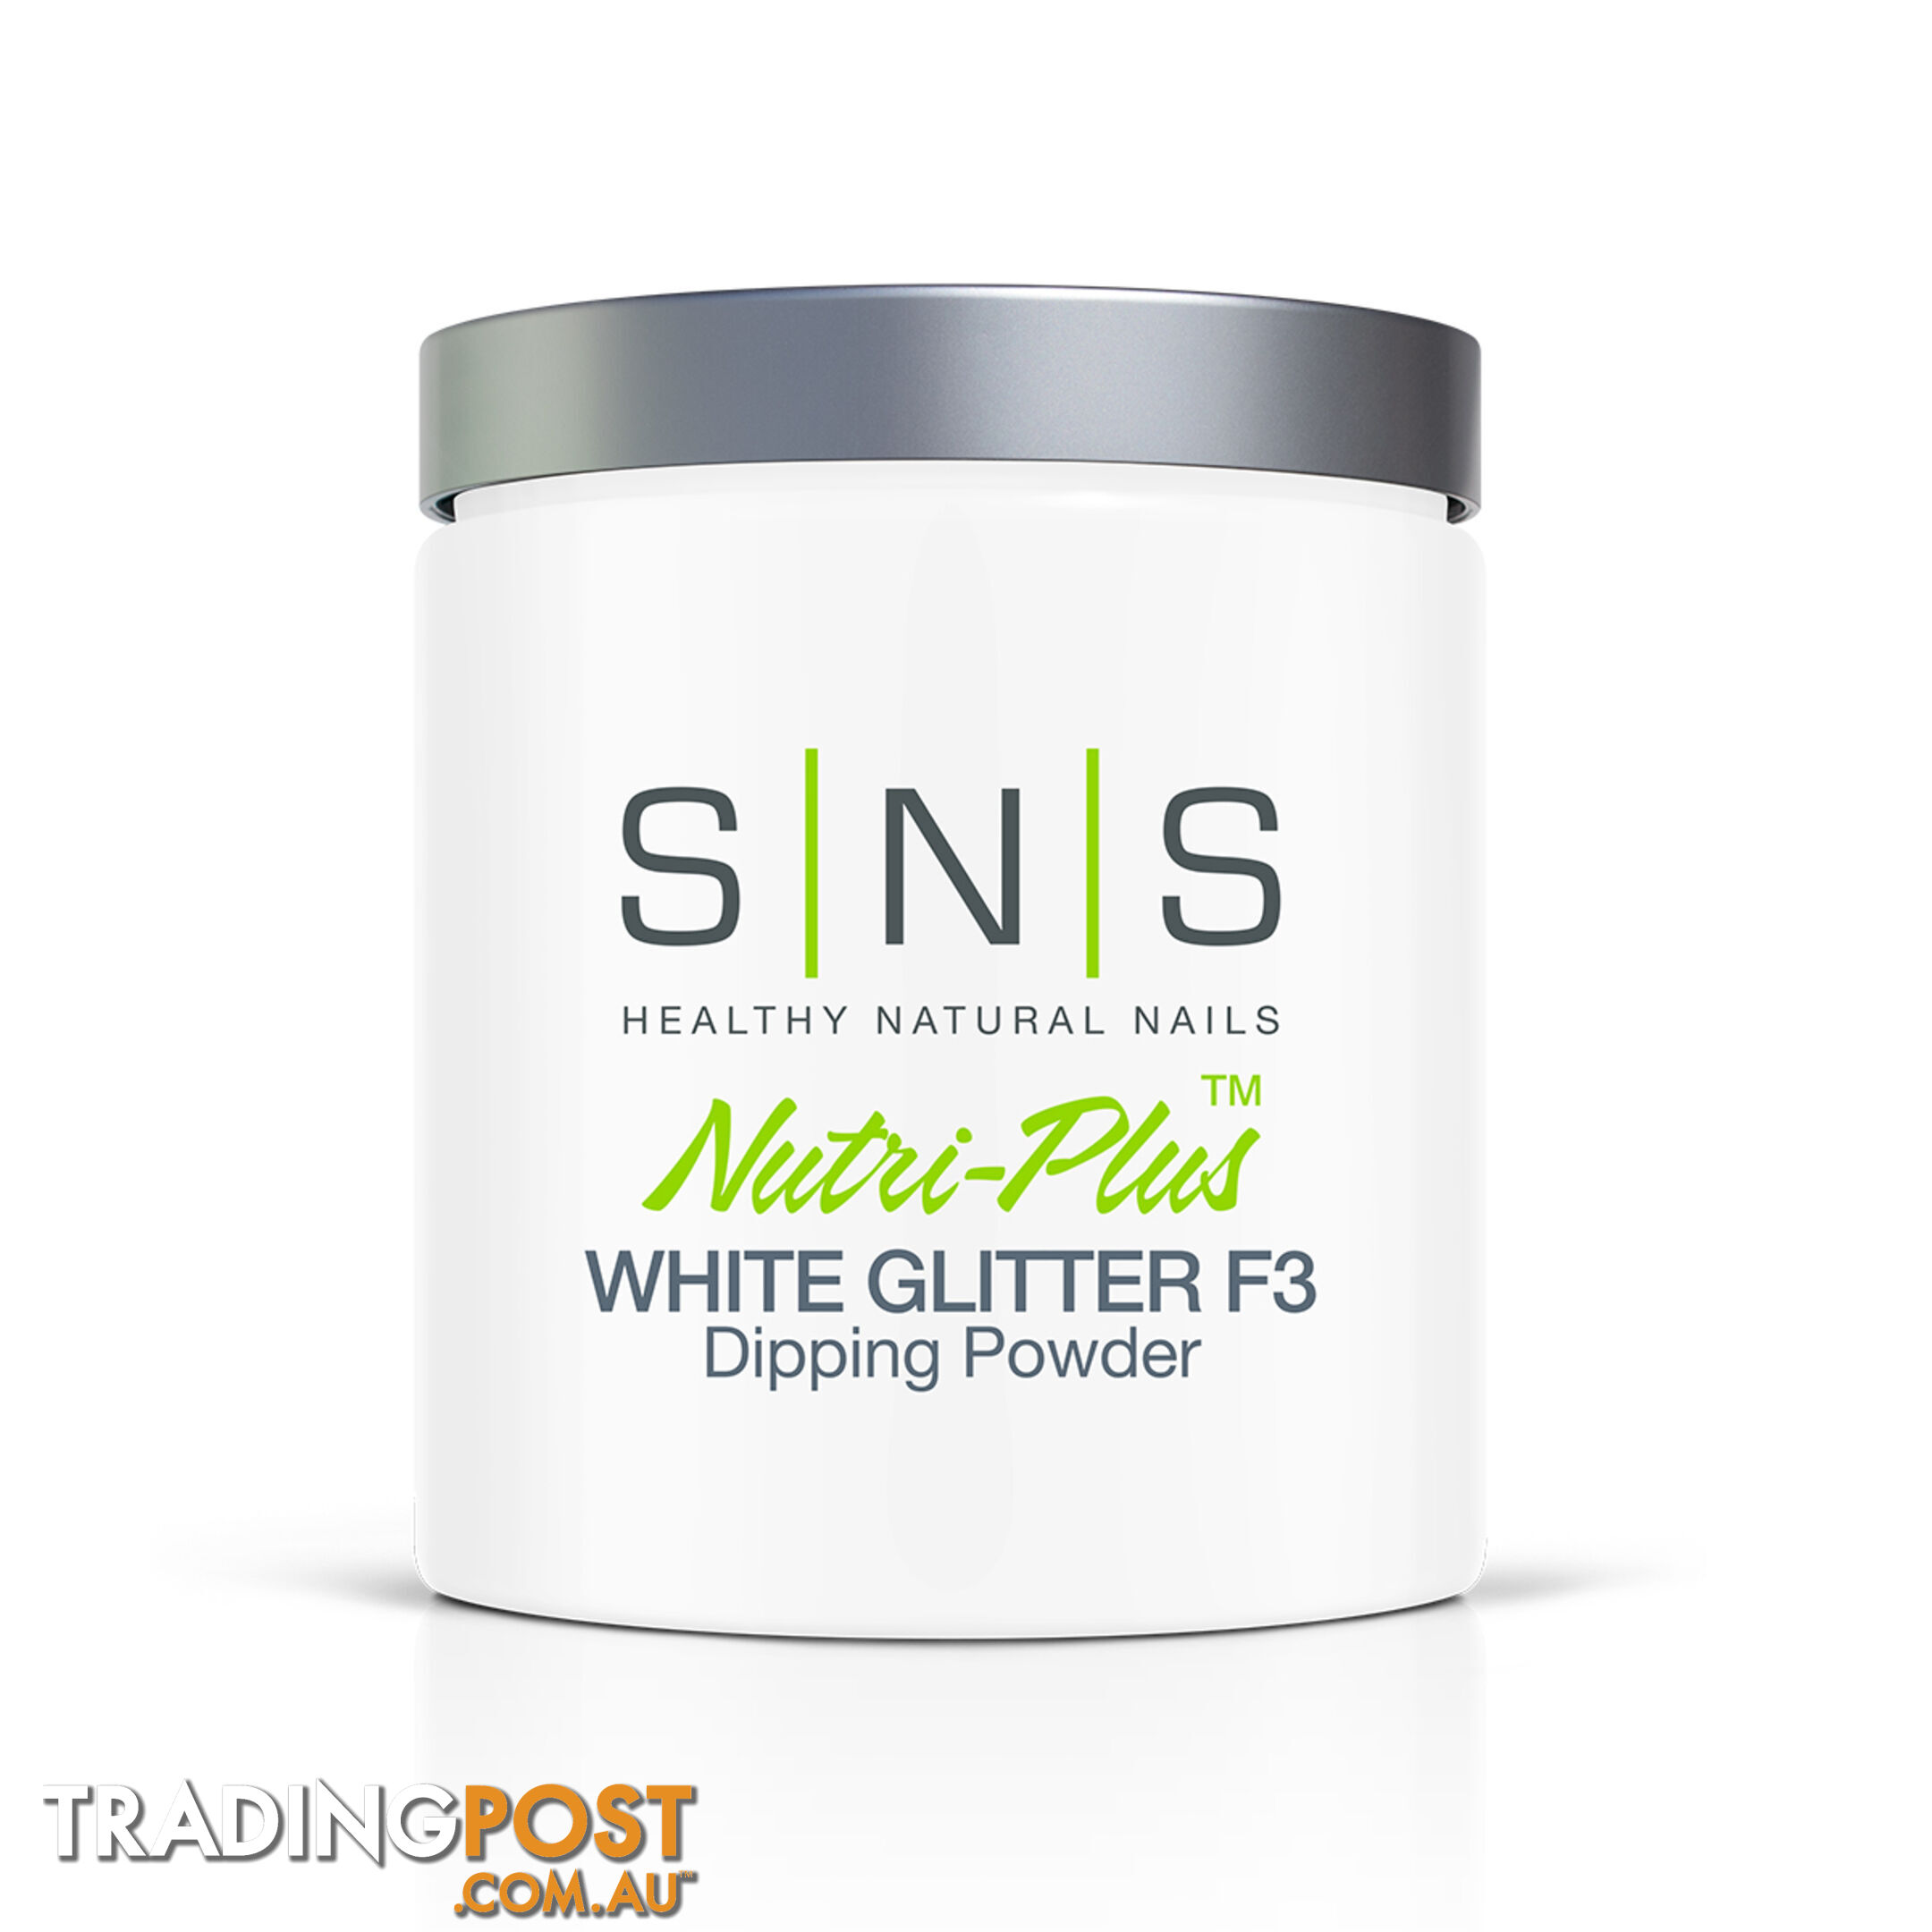 SNS French White Glitter F3 (16oz) 448g - 635635735517